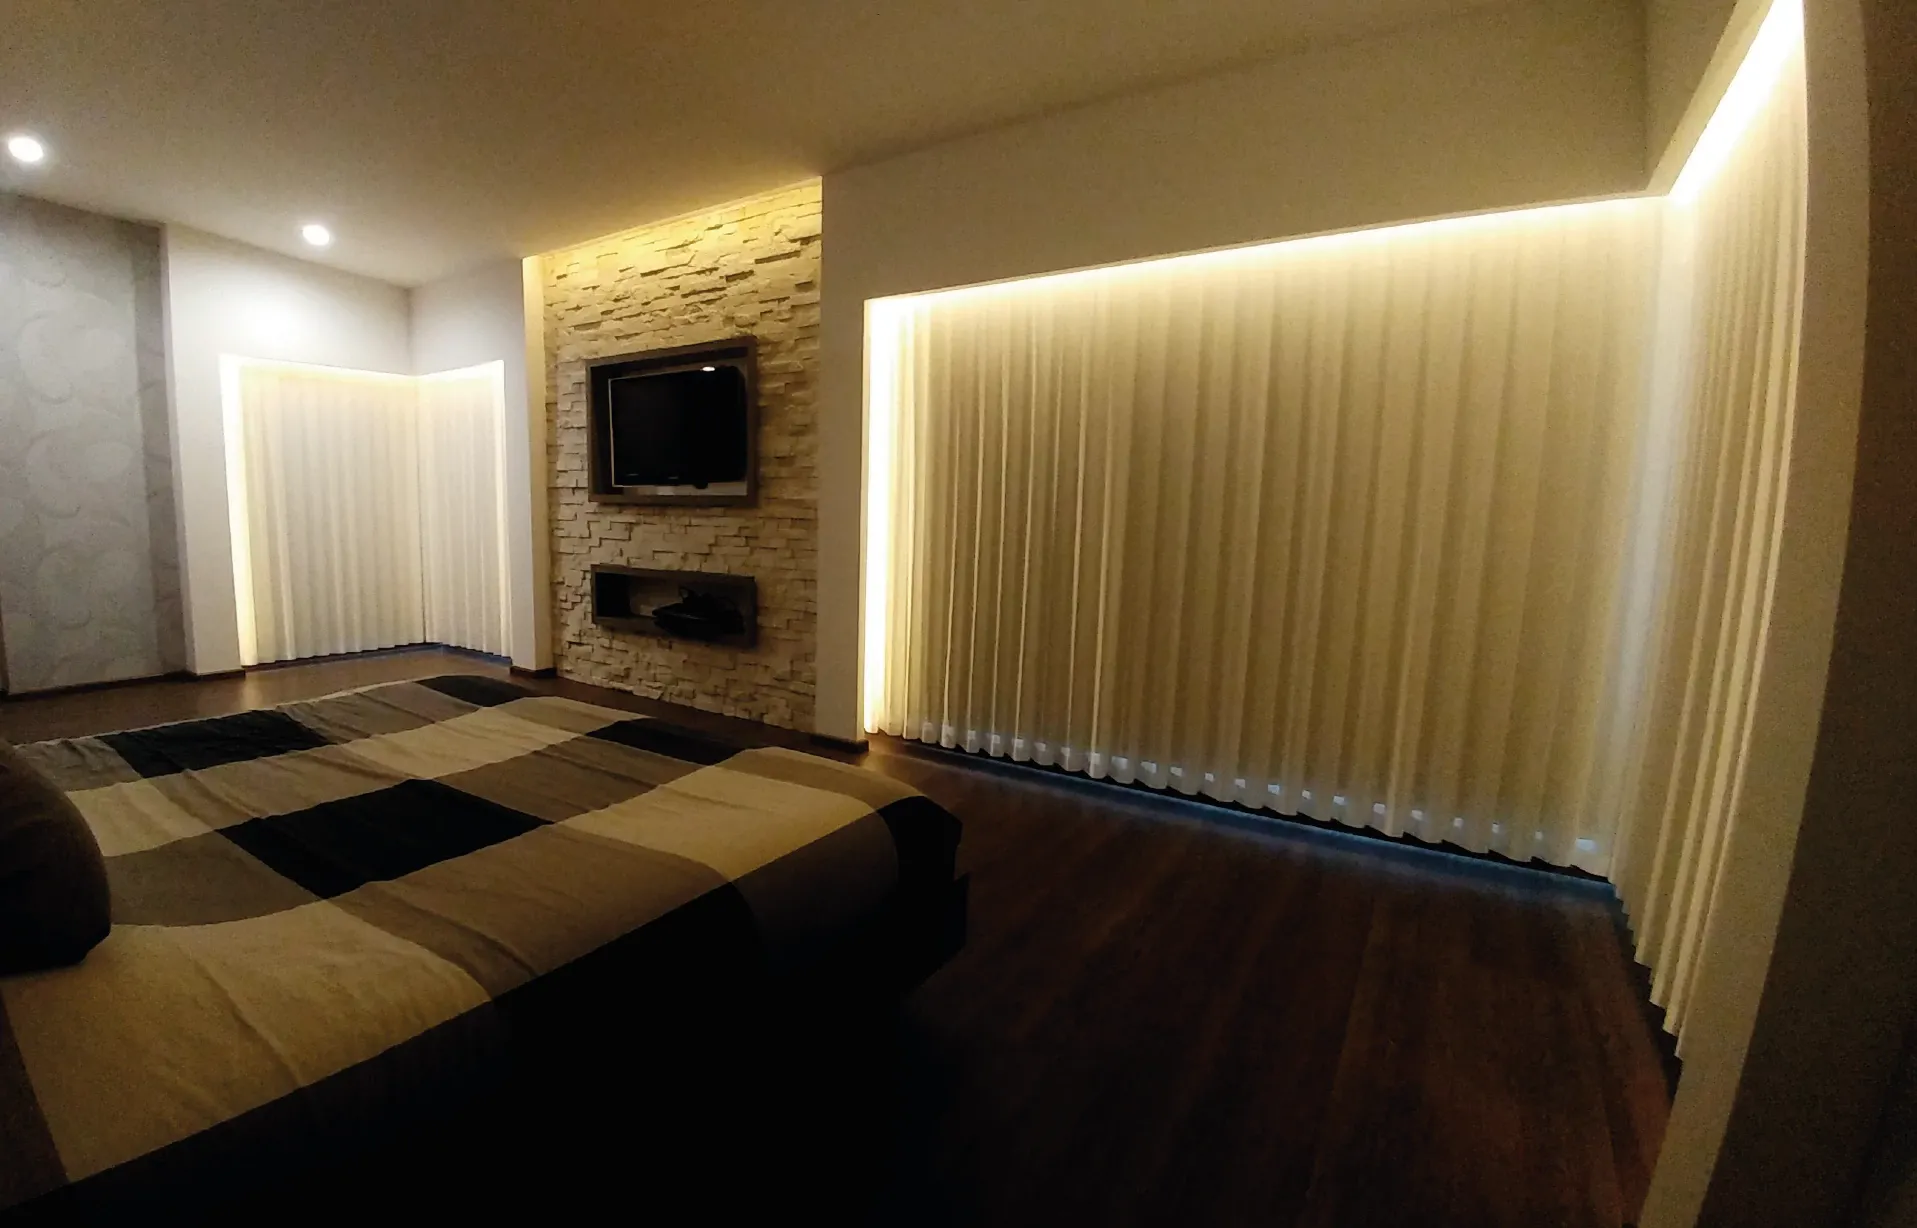 Las persianas verticales Velum cuentan con tejidos blackout, capaces de bloquear la luz exterior y ofrecer una mayor privacidad.